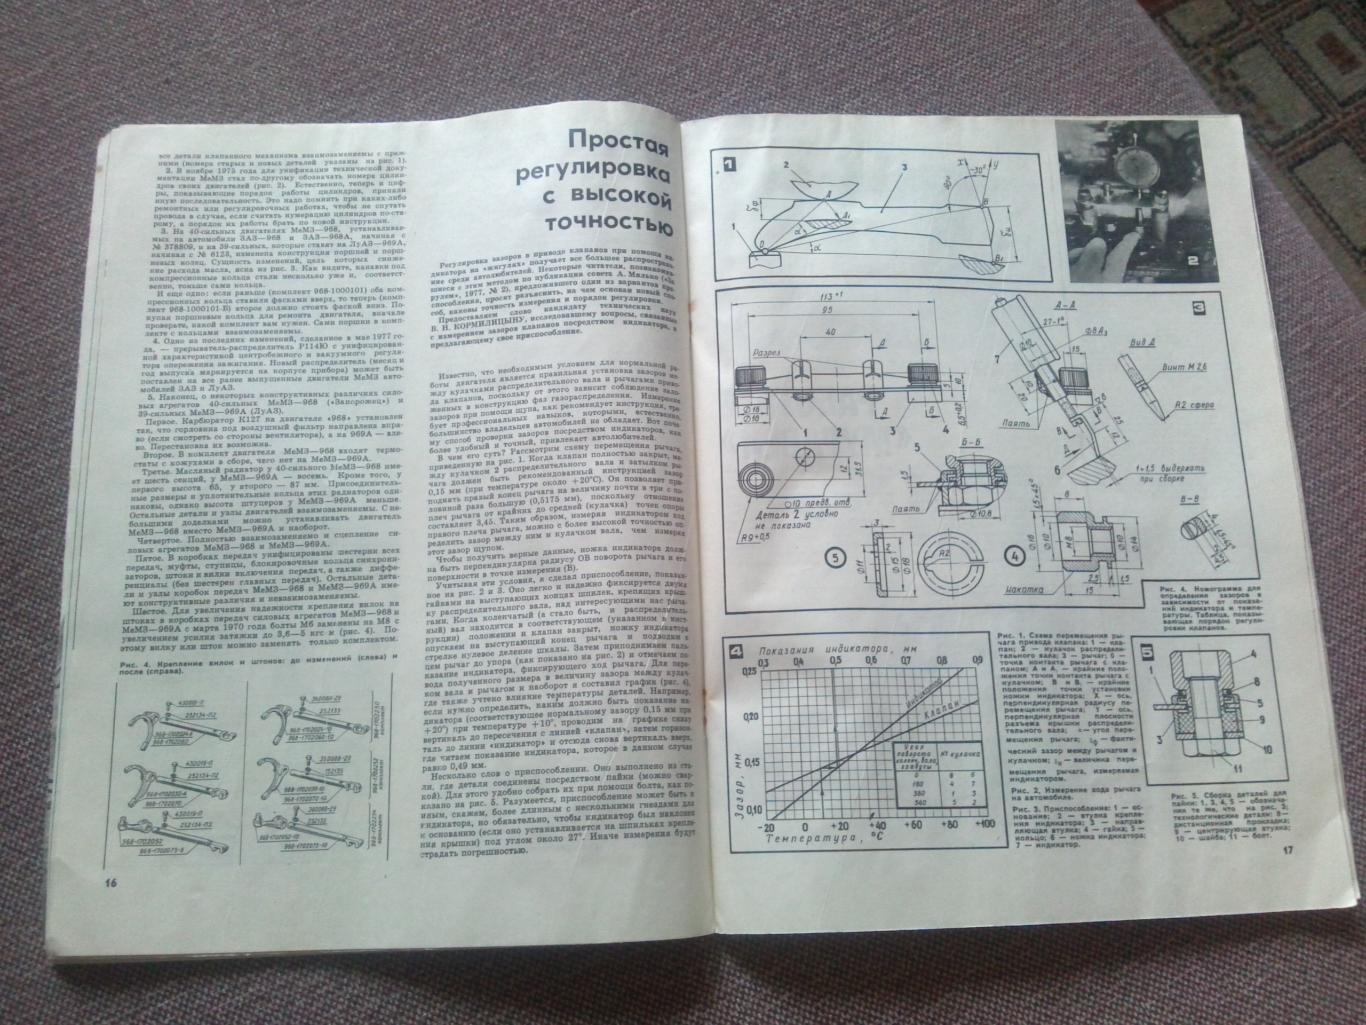 Журнал СССР :За рулем№ 6 ( июнь ) 1978 г. ( Автомобиль , транспорт ) 6